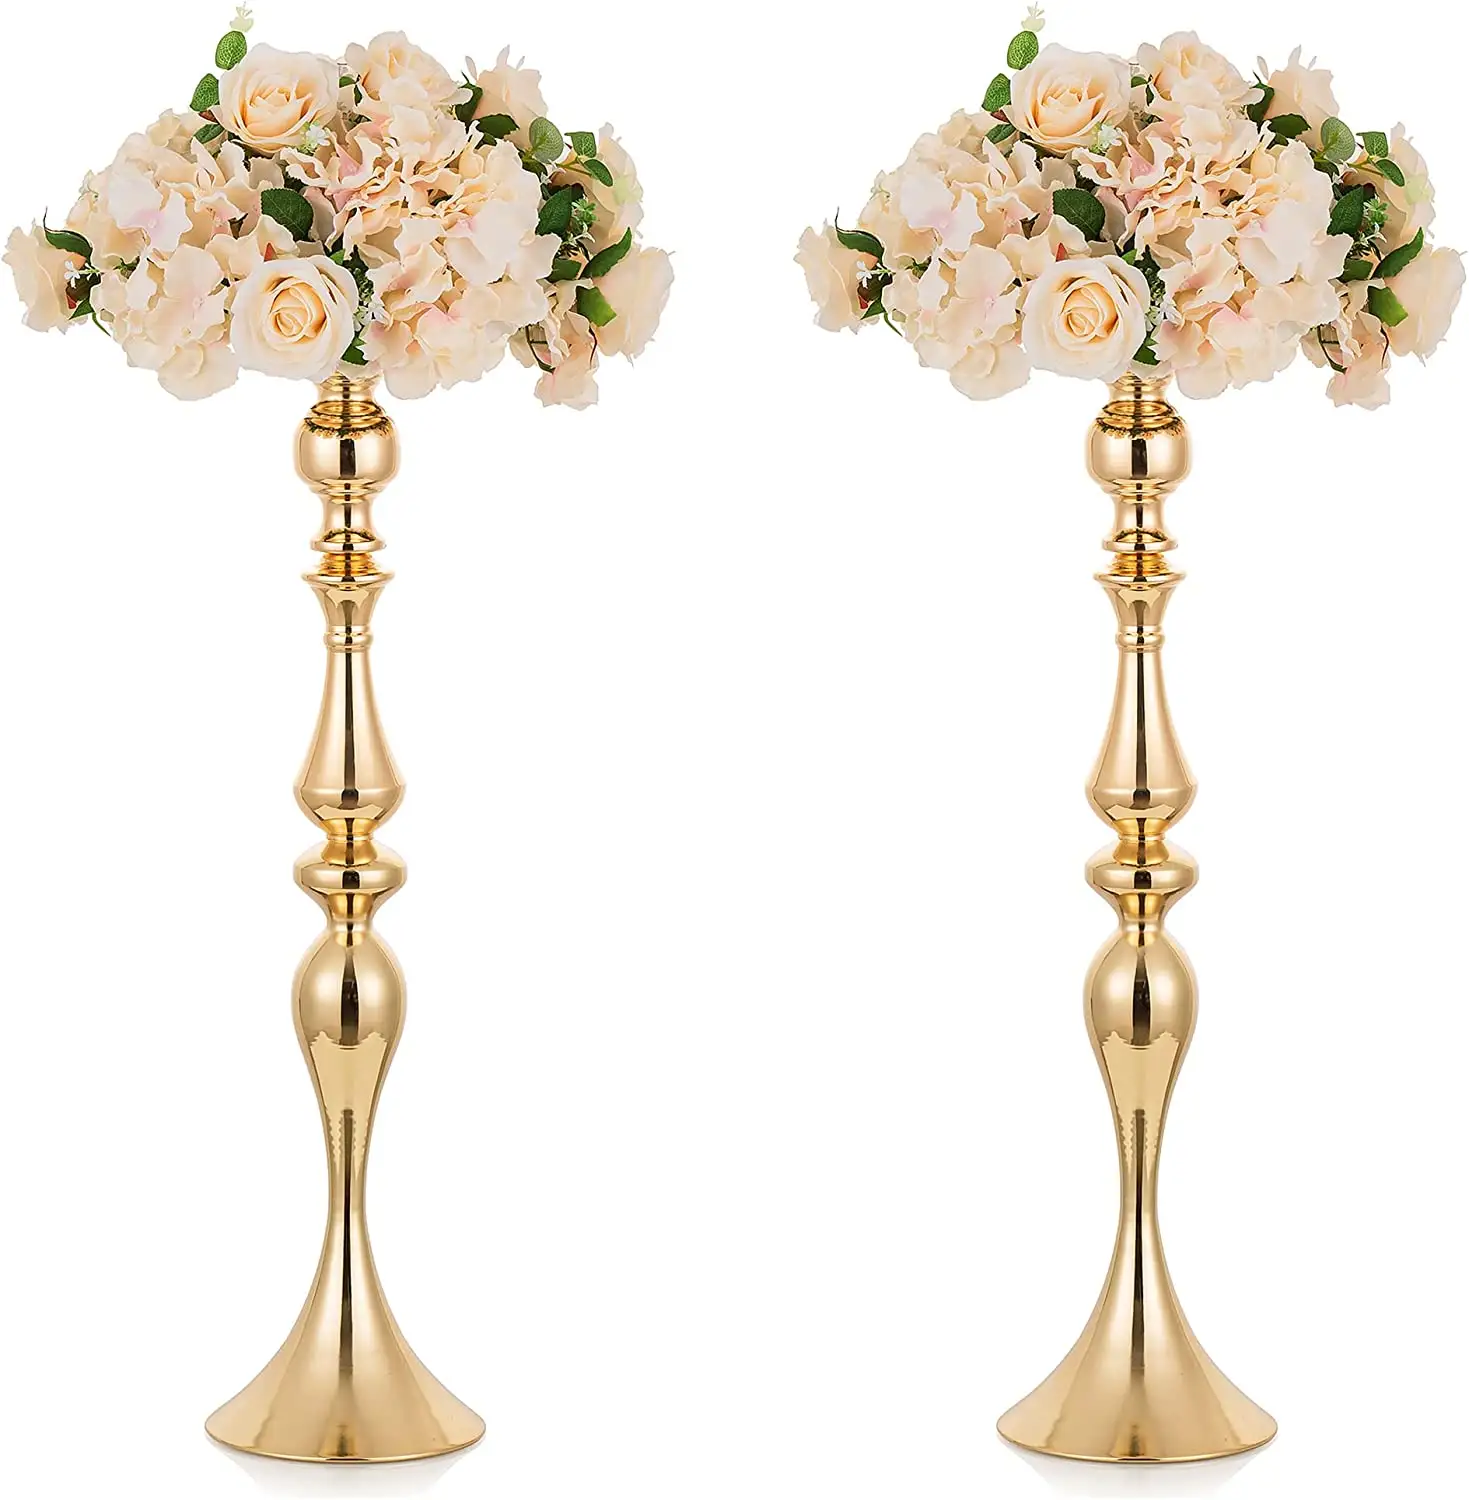 Zarif uzun boylu düğün çiçek sütun standı/ekran Metal ayakta çiçek düzenleme vazo kaideleri çiçek dekor için vazo standı